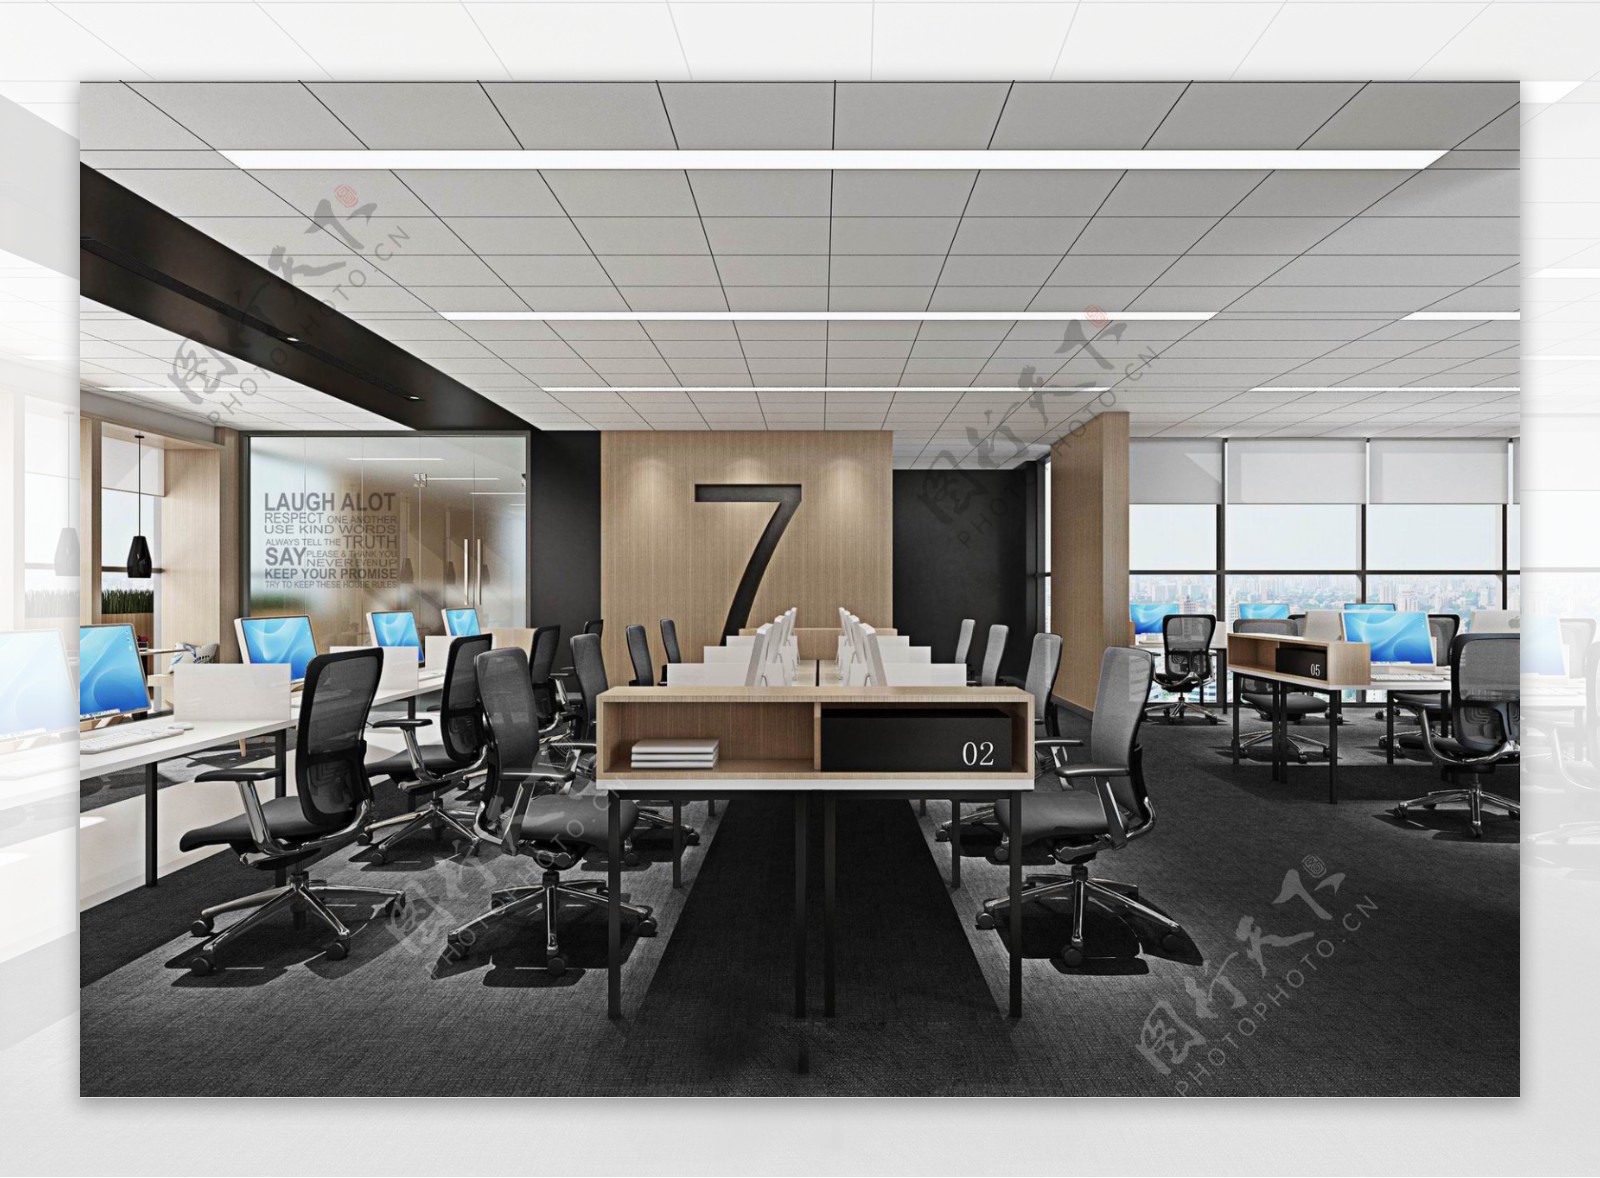 现代简约格子天花板办公室工装装修效果图